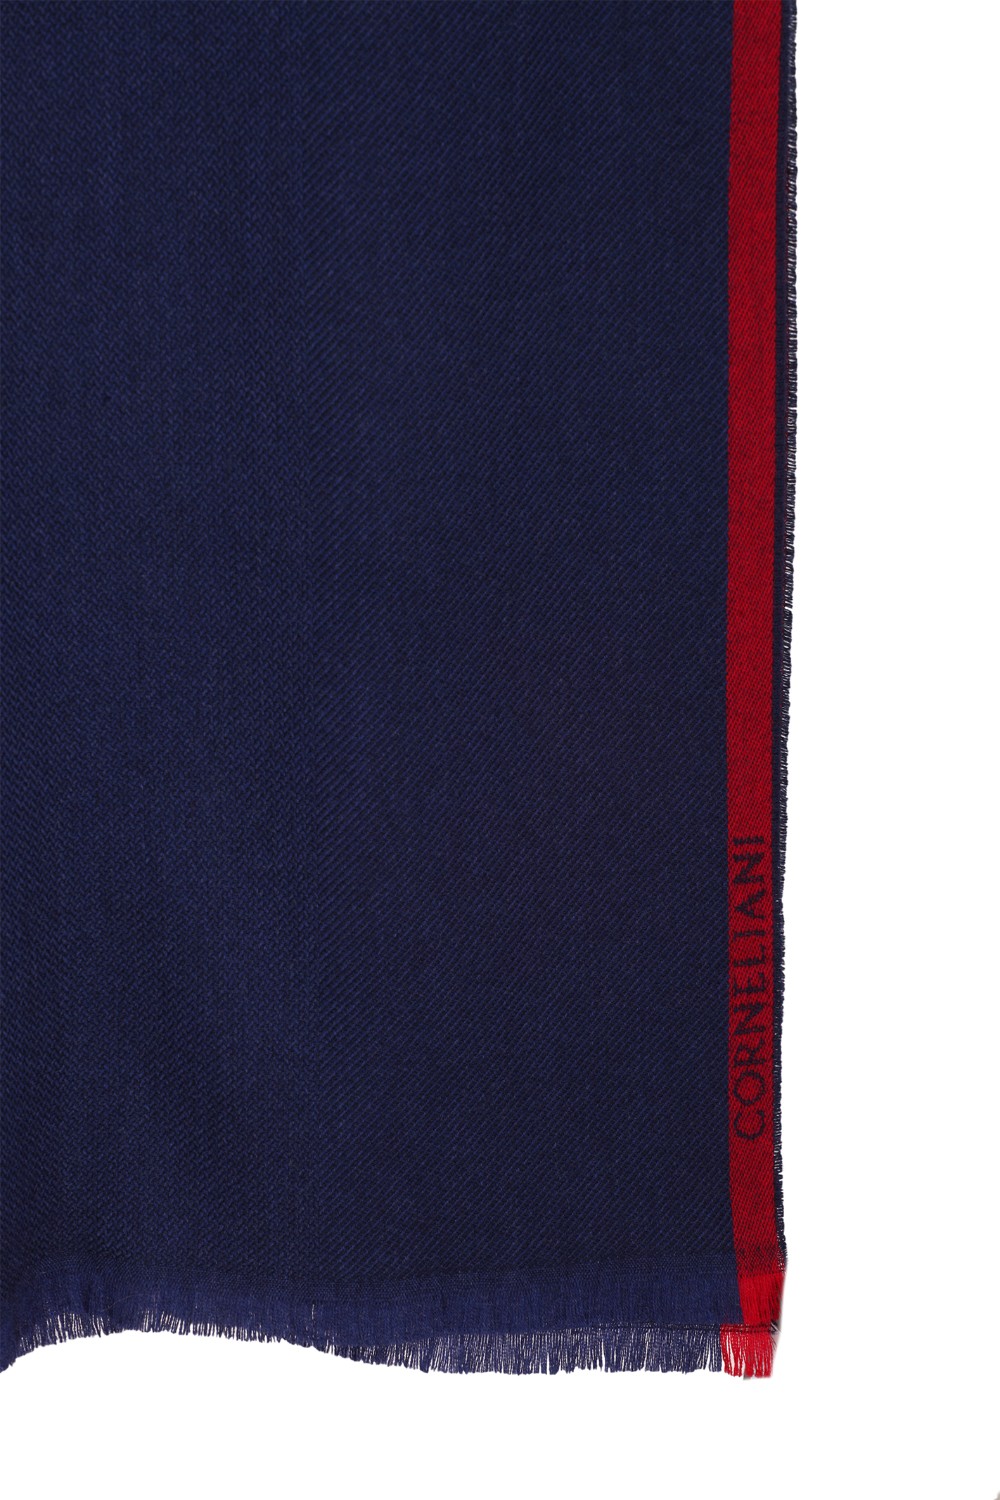 shop CORNELIANI  Sciarpa: Corneliani sciarpa blu in lana e cachemire.
Bordi sfrangiati.
Composizione: 80% lana 20% cachemire.
Dimensioni: 170 x 35 cm.
Made in Italy.. 86B389-0829015-001 number 1739887